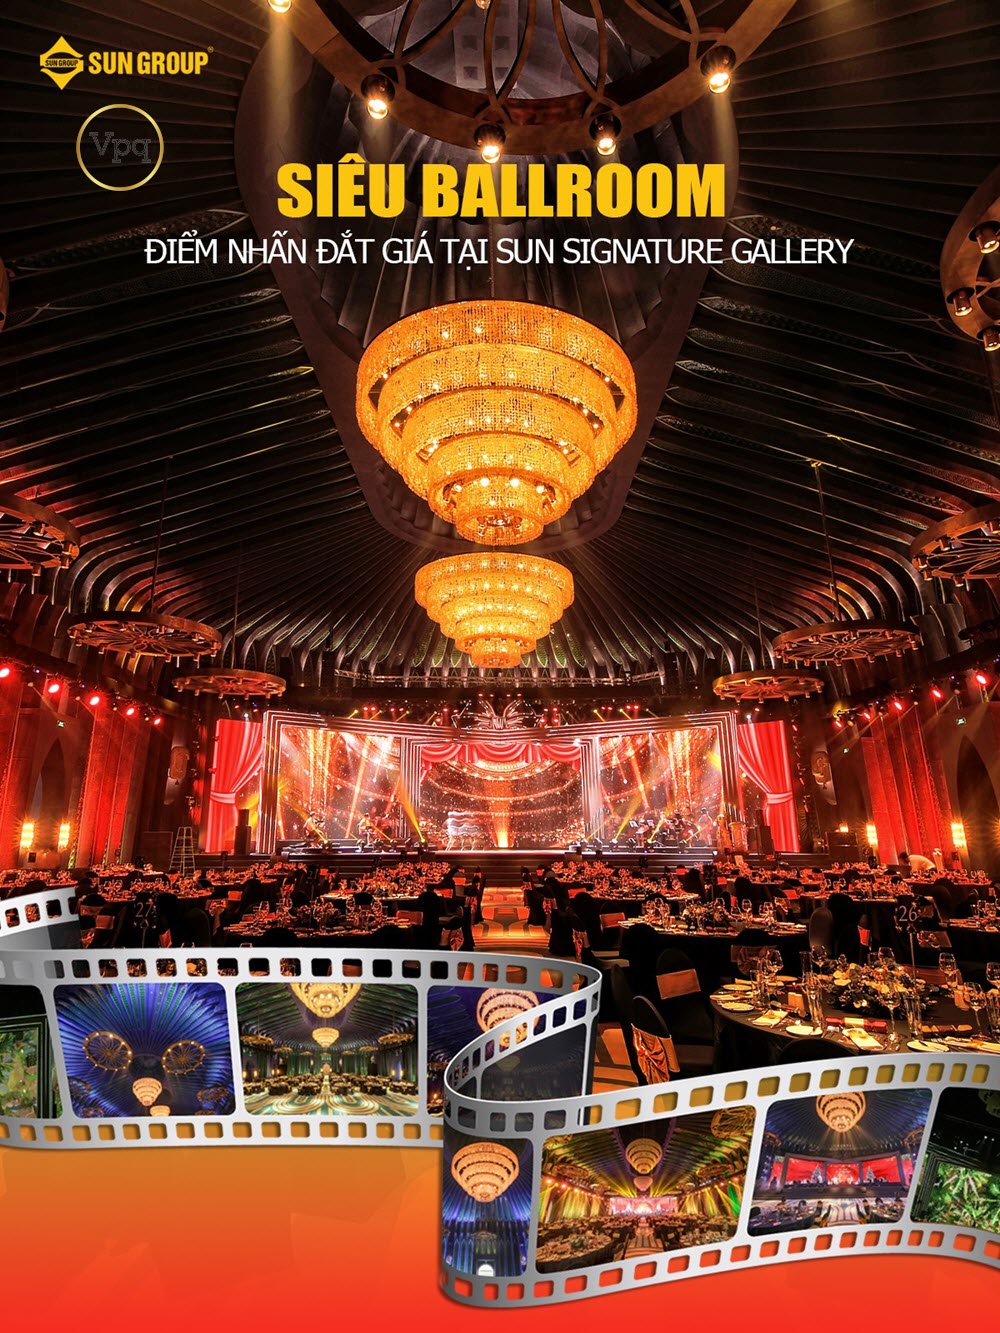 Siêu Ballroom tại Sun Signature Gallery là sự kết hợp hoàn hảo của nghệ thuật kiến trúc cổ điển và hệ thống âm thanh tiêu chuẩn quốc tế